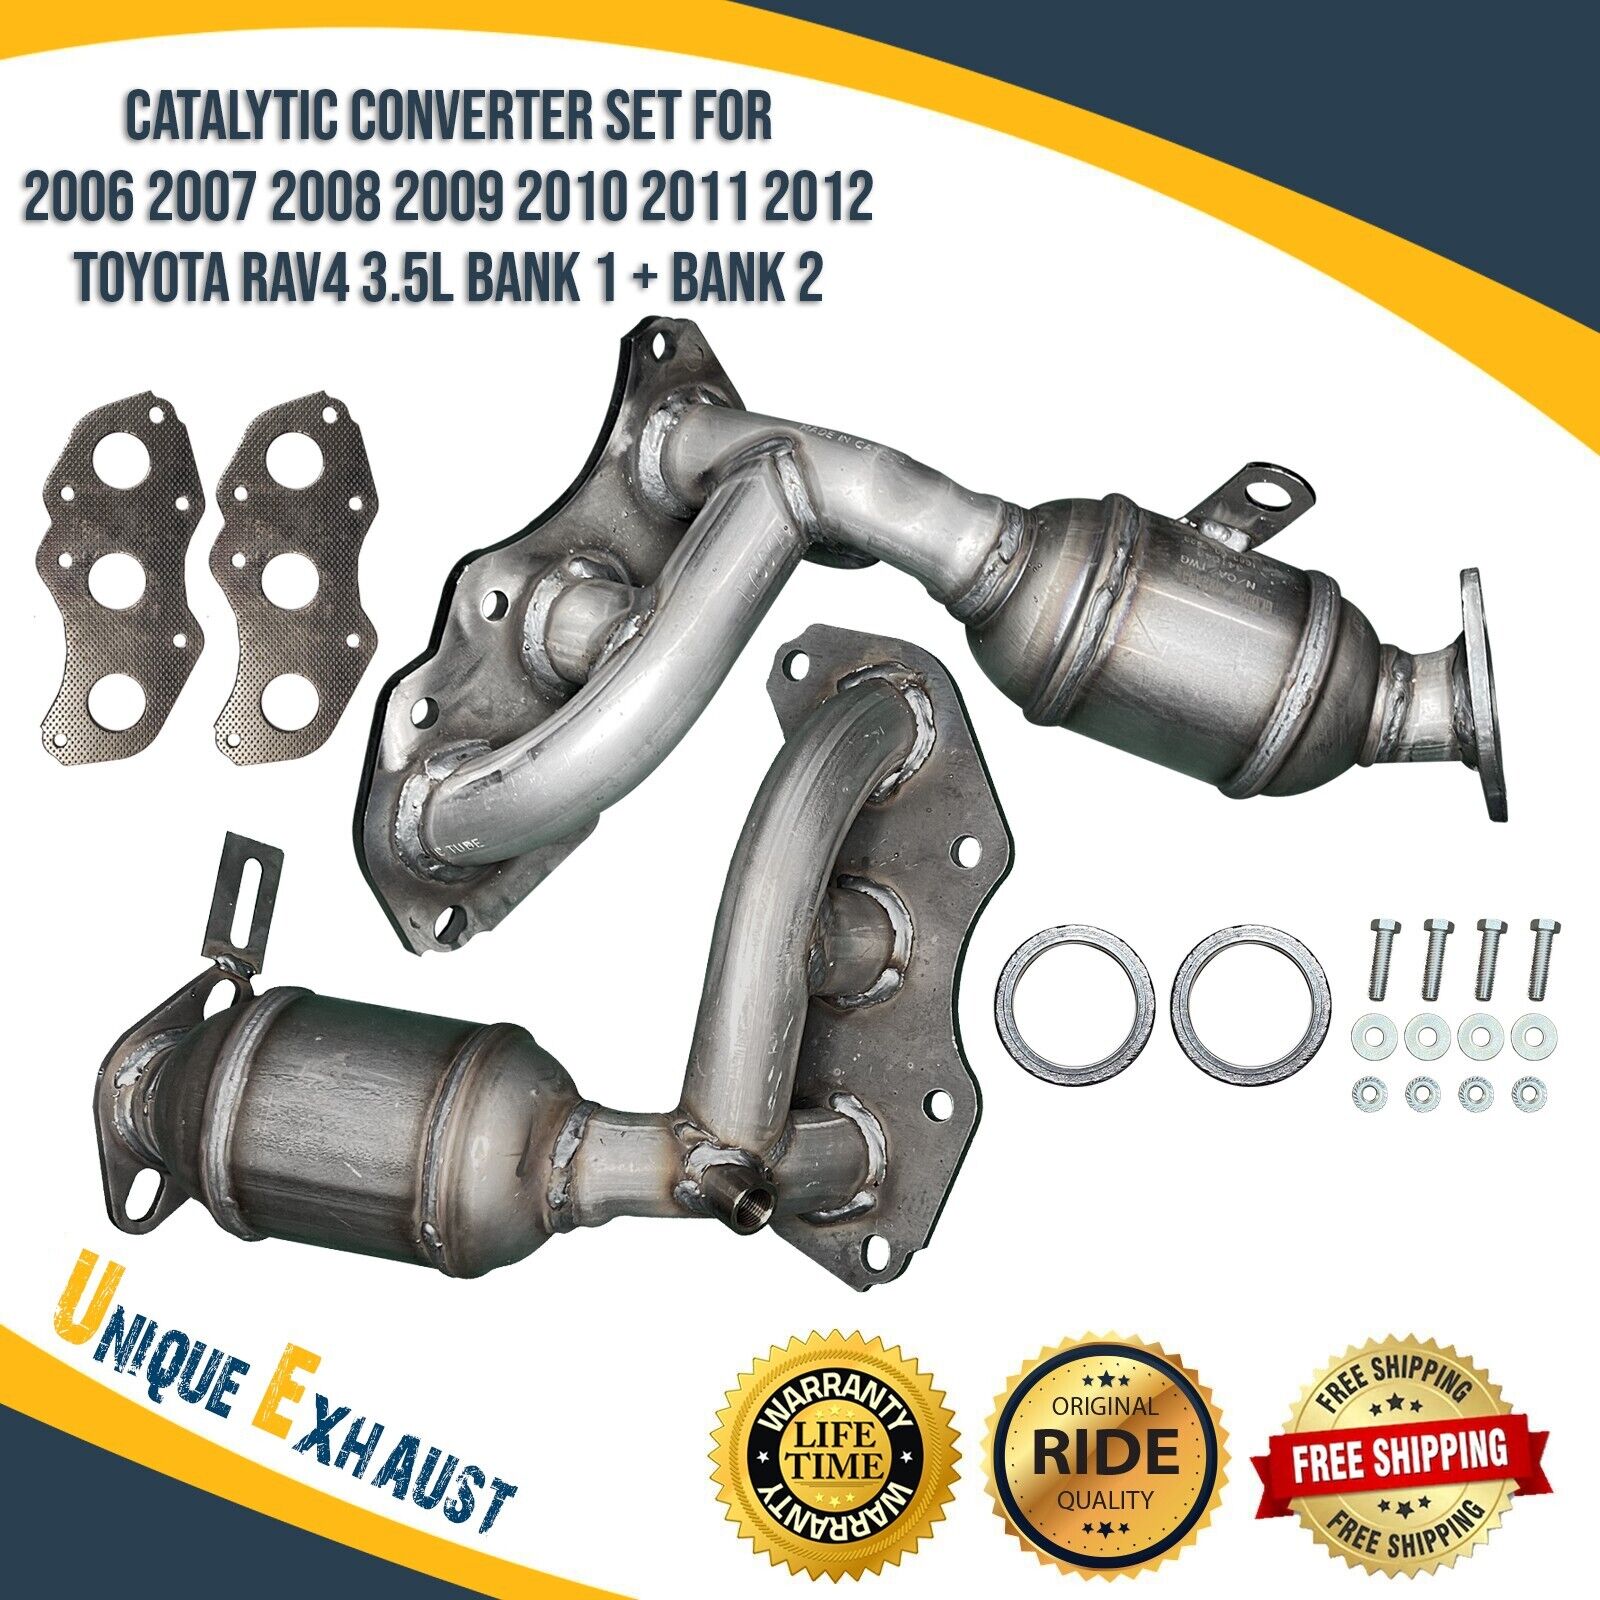 Catalytic Converter Set for 2006-2012 Toyota RAV4 3.5L Bank 1 + Bank 2 In Stock